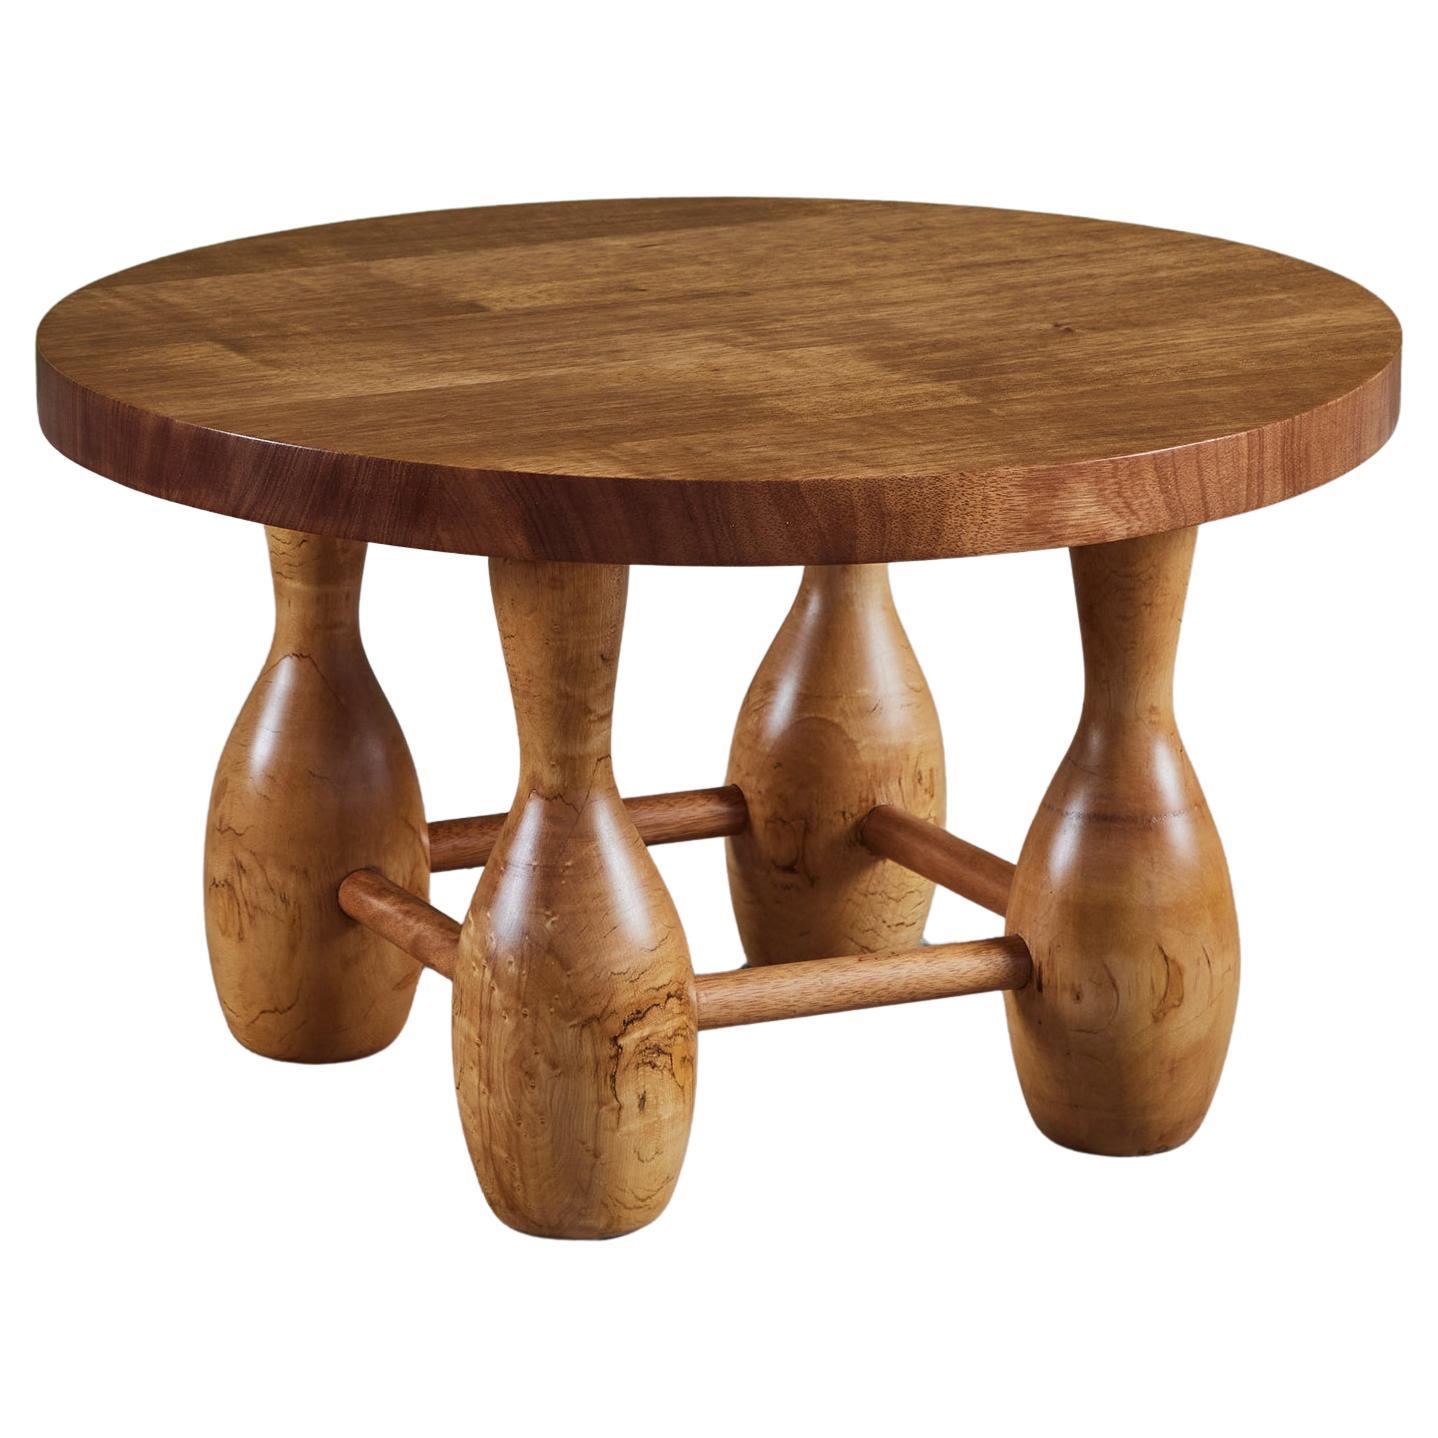 Table d'appoint ronde en acajou avec pieds courbes surdimensionnés